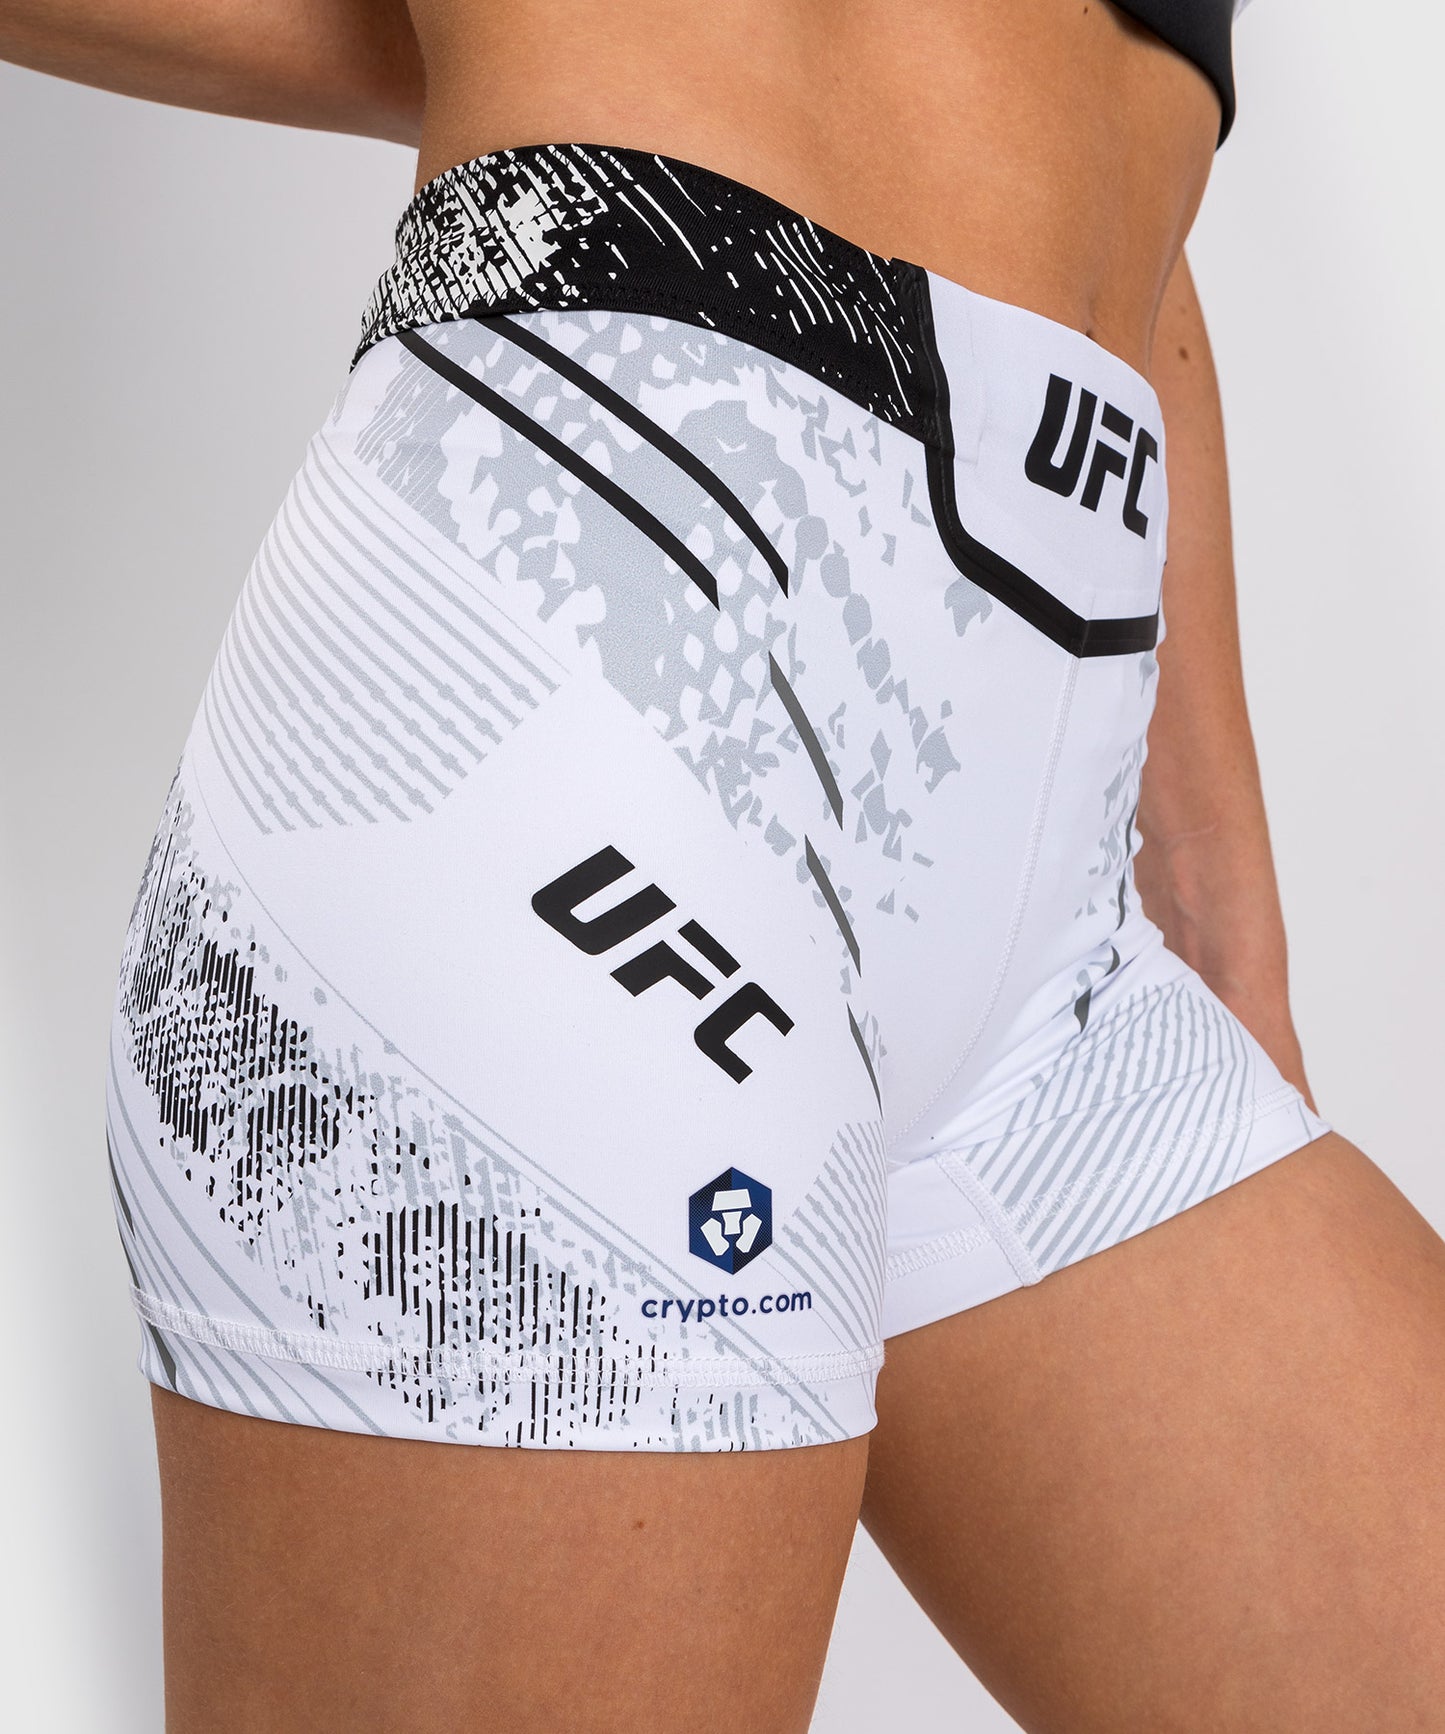 UFC Adrenaline by Venum Authentic Fight Night Vale Tudo Short für Frauen - kurze Passform - weiß